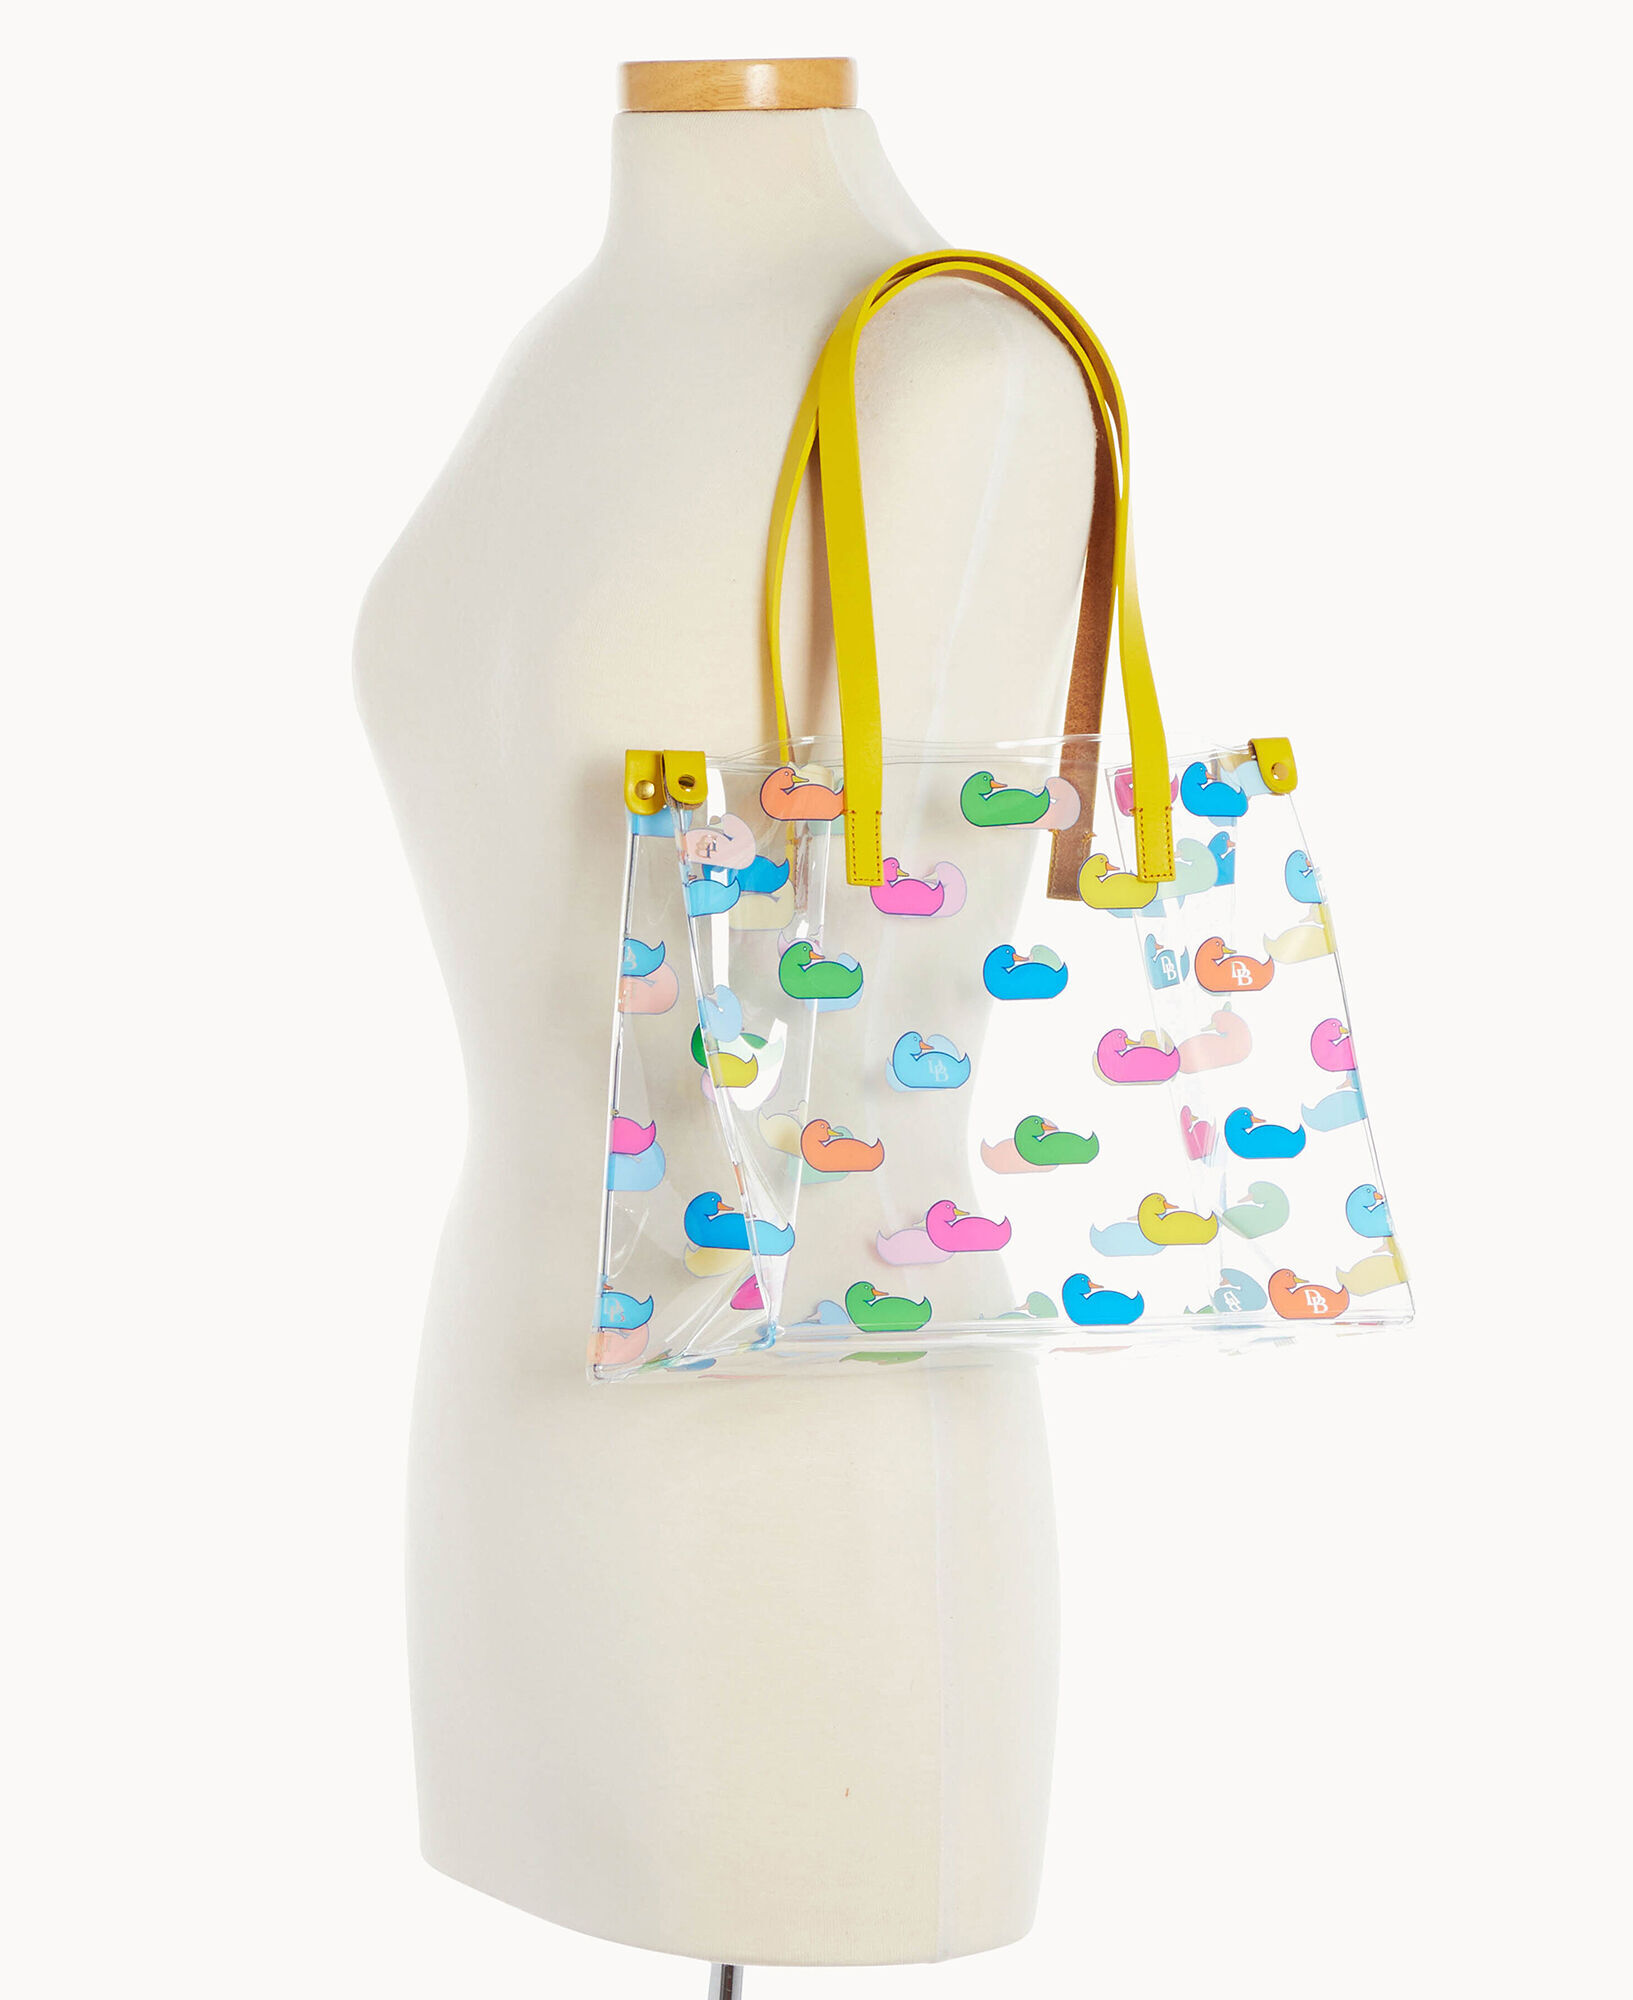 Discover the irresistible LV × Nigo collaboration👀 The Duck Bag